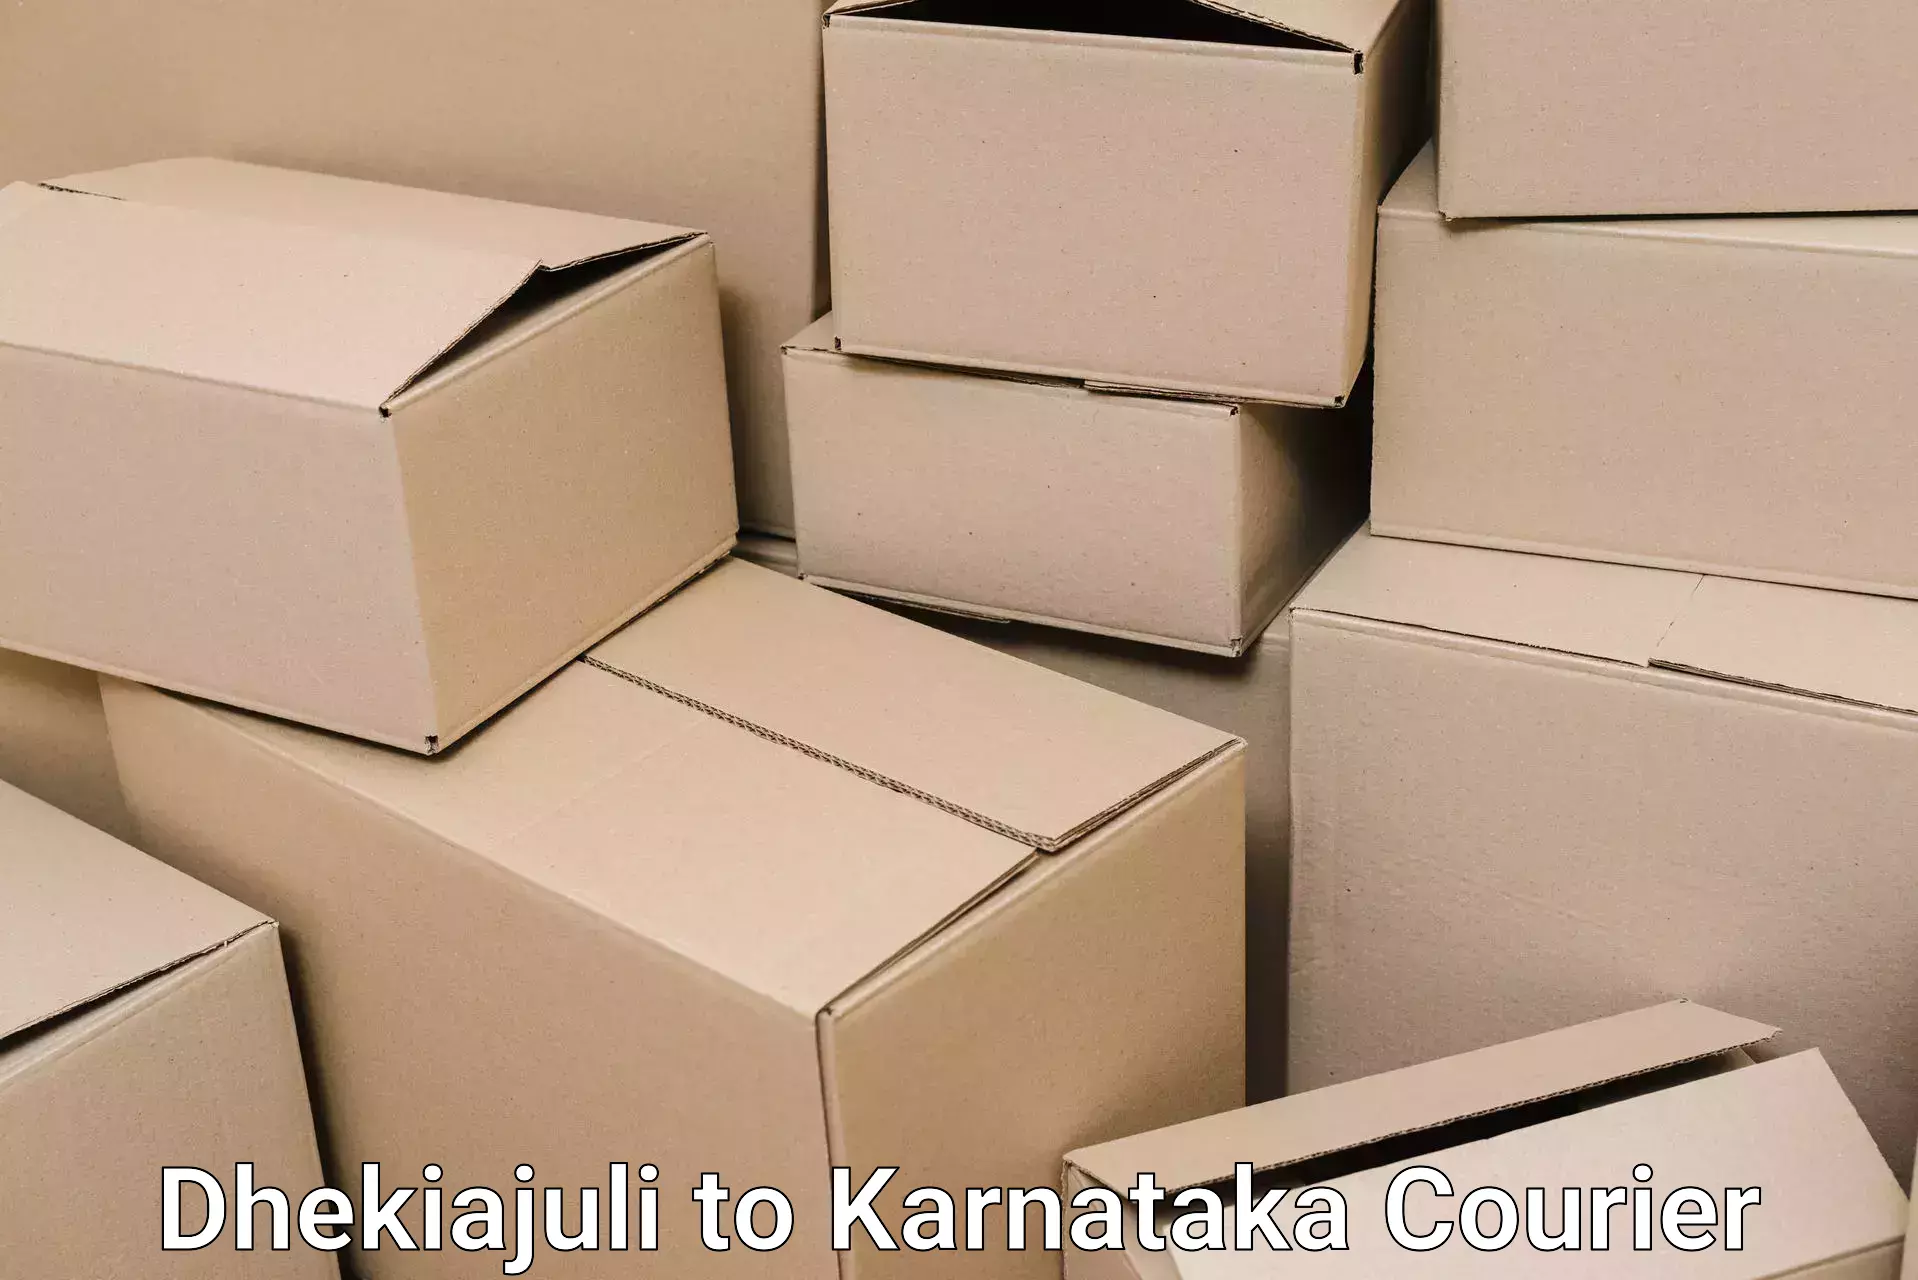 Professional packing services Dhekiajuli to Channarayapatna